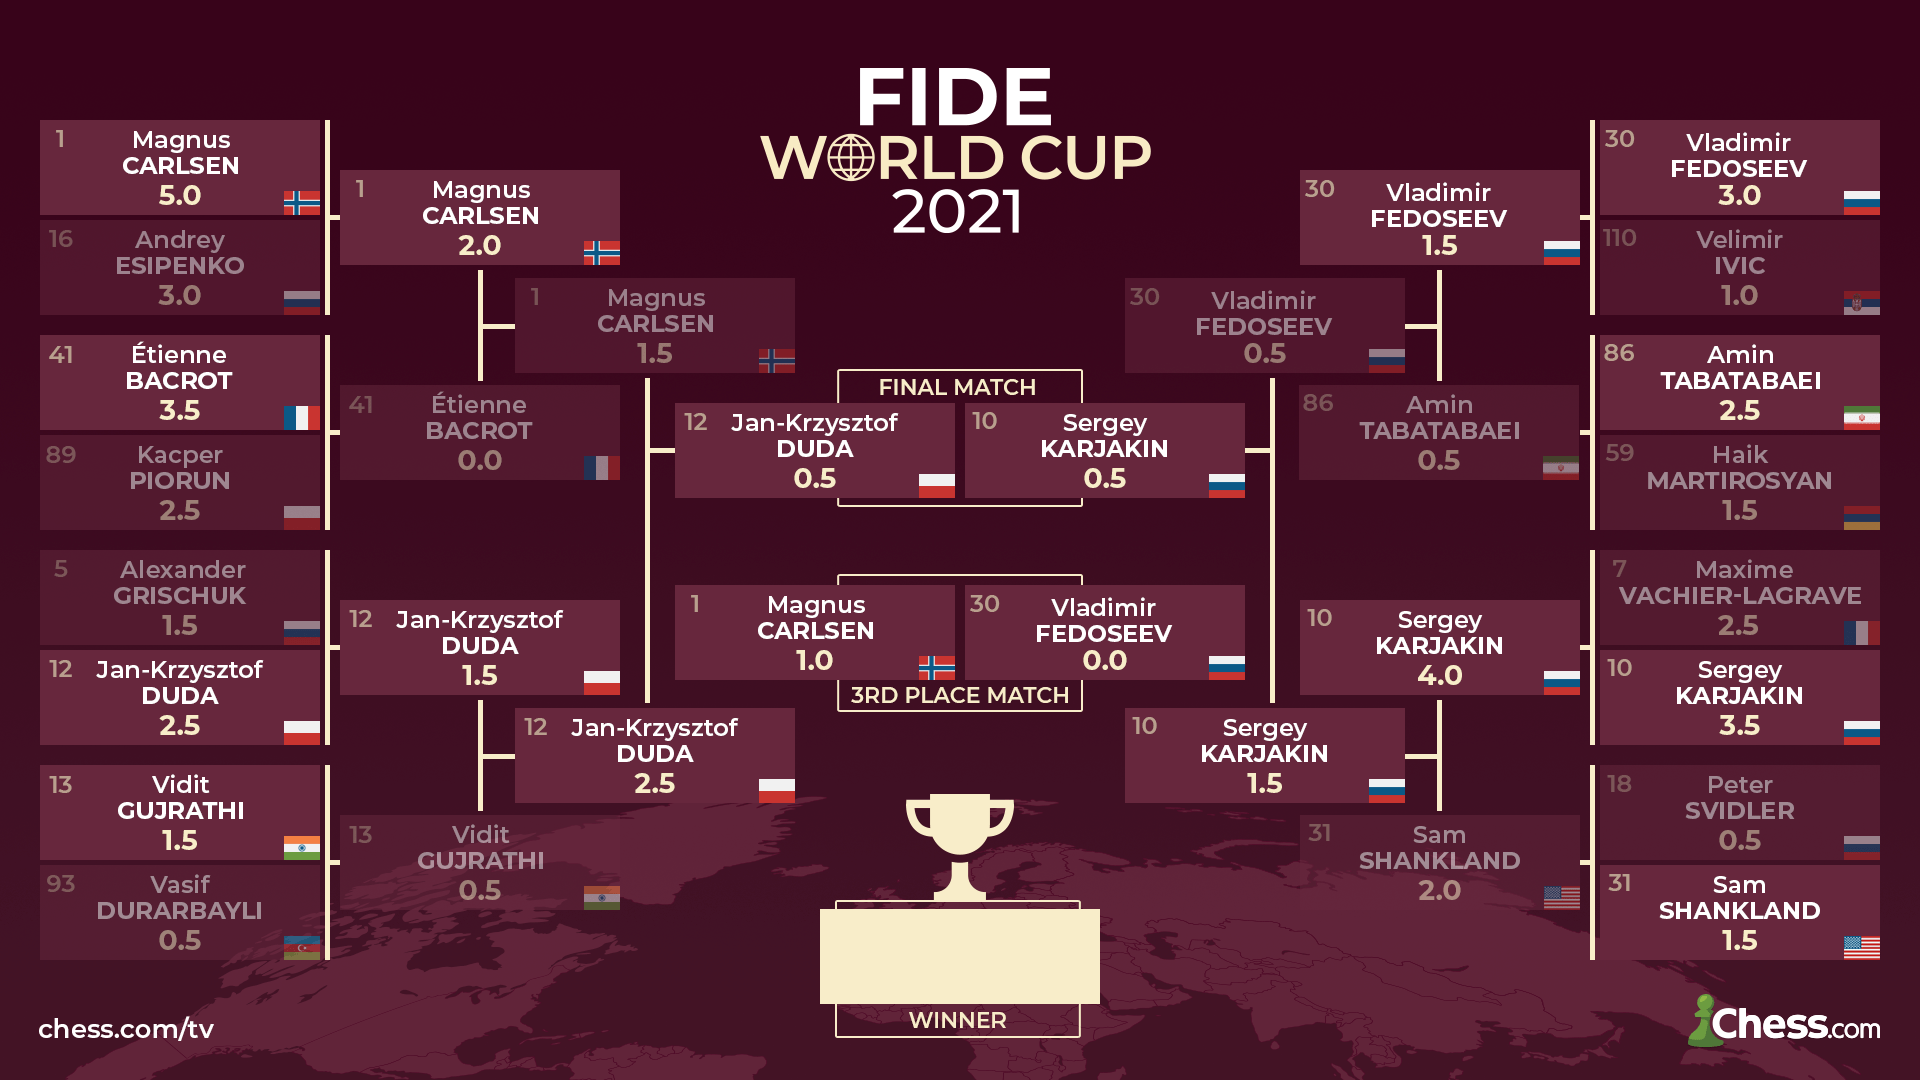 FIDE World Cup Finals Carlsen Wins Masterpiece